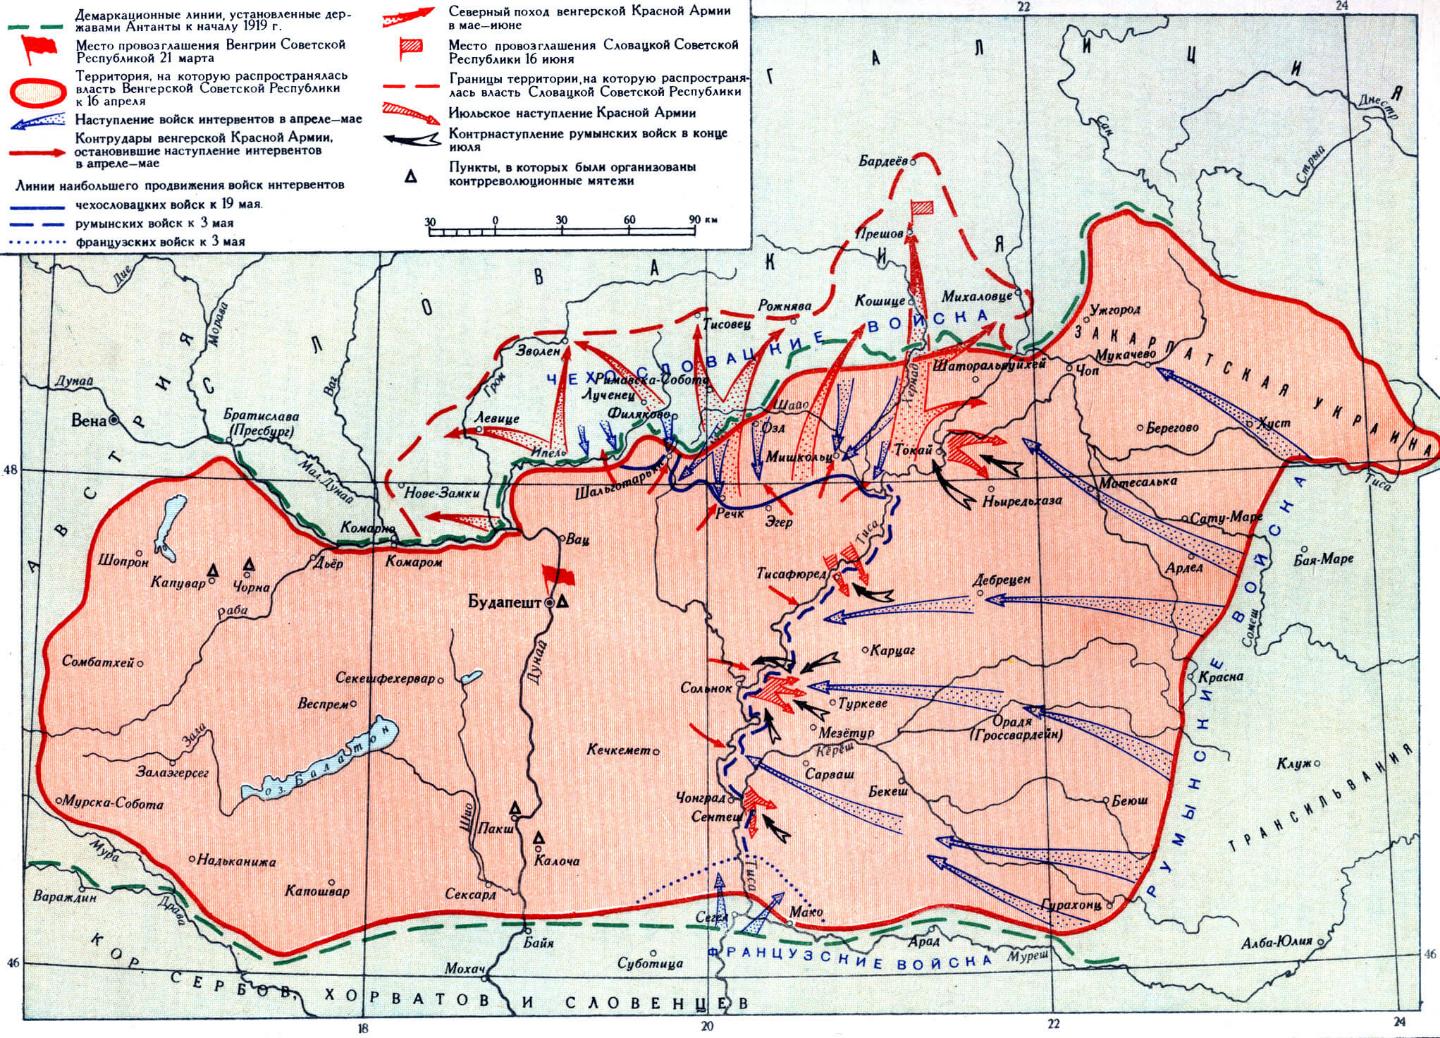 Венгерская республика в окружении врагов, часть территории оккупирована.